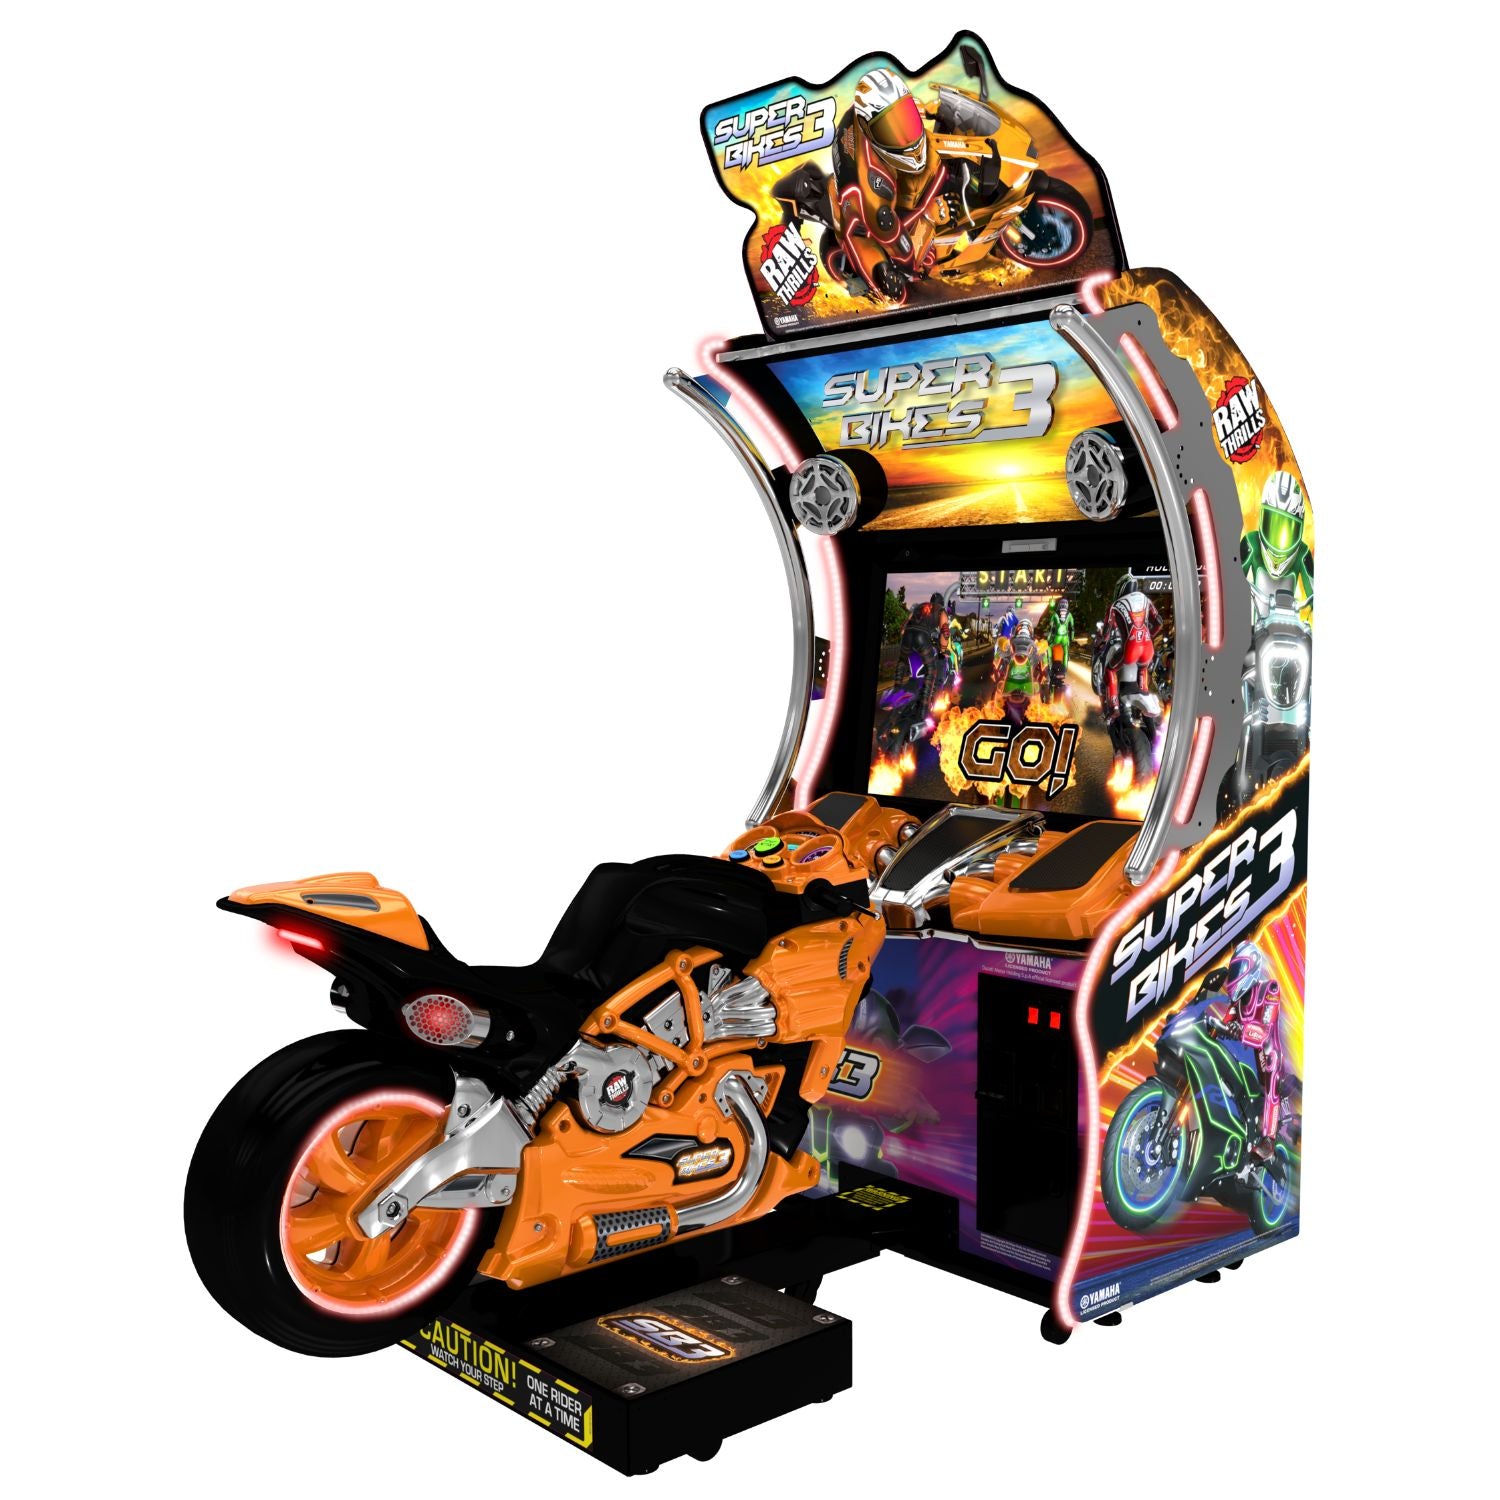 Raw Thrills Super Bikes 3 Arcade Game - Gaming Blaze